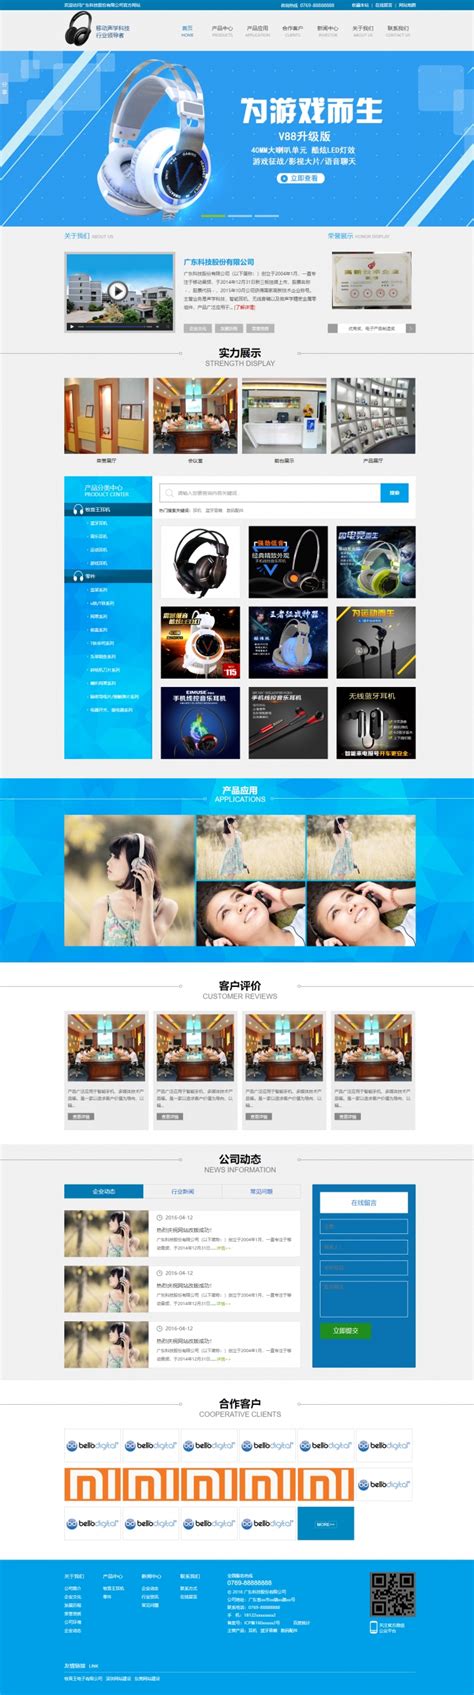 蓝色简洁风格的电子科技产品企业网站源码下载